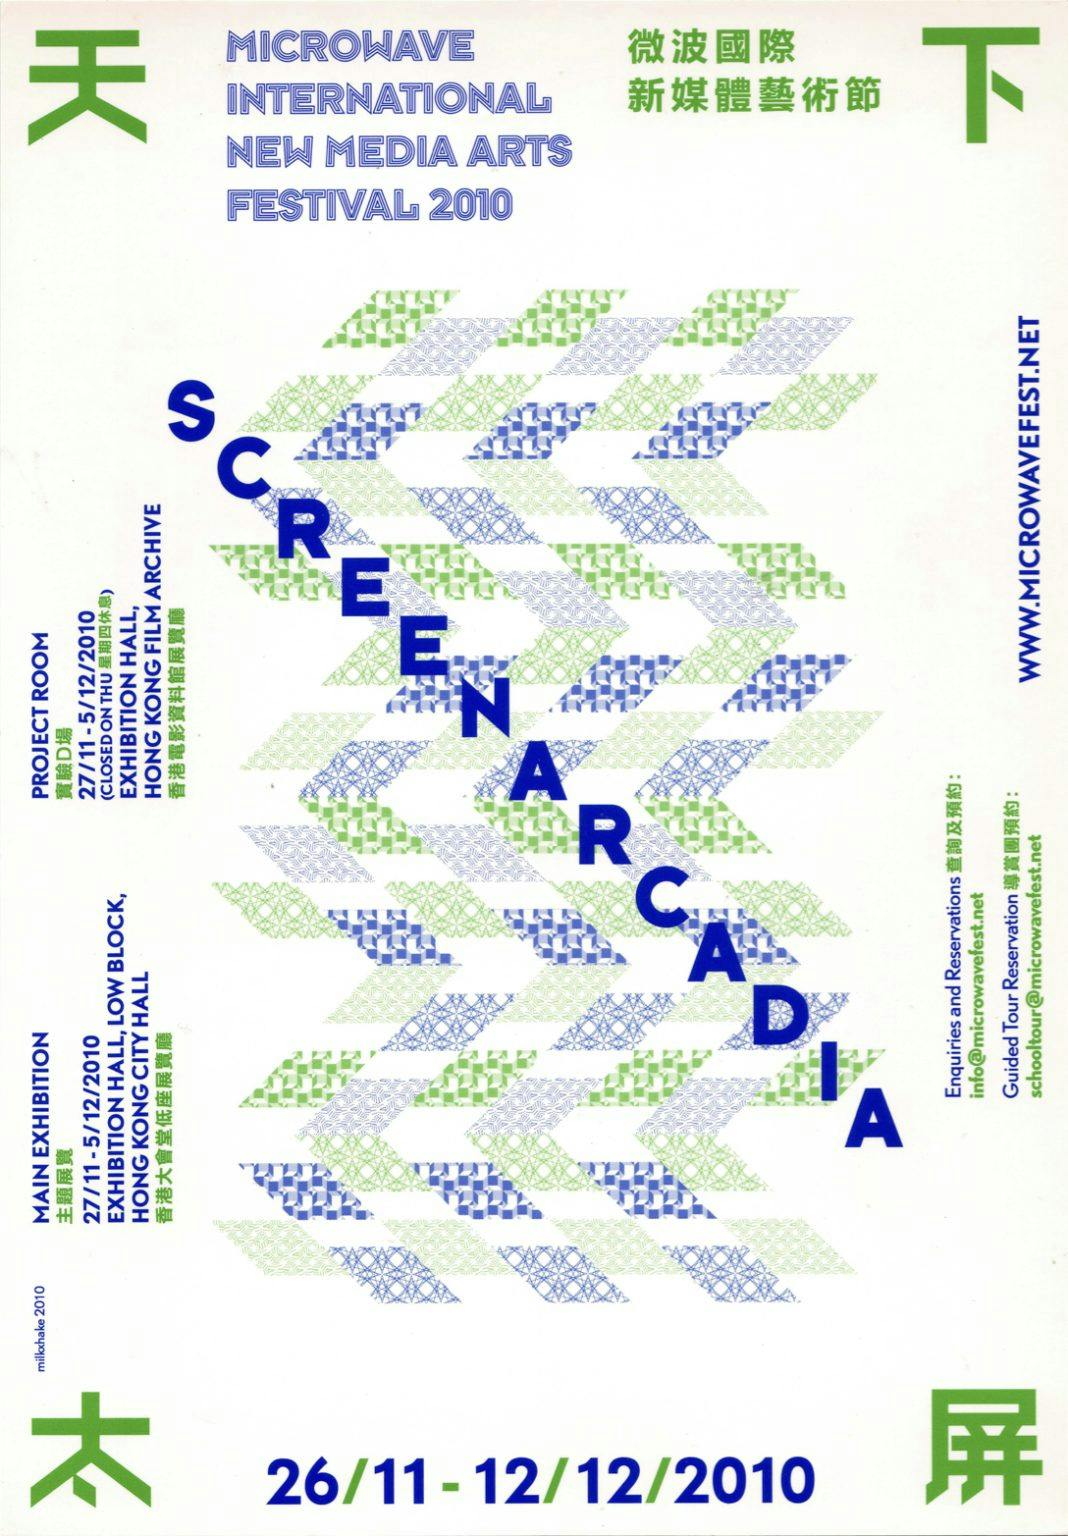 Microwave International New Media Arts Festival- Screenarcadia – Postcard(1) 微波國際媒體藝術節2010- 天下太屏 – 明信片(1)